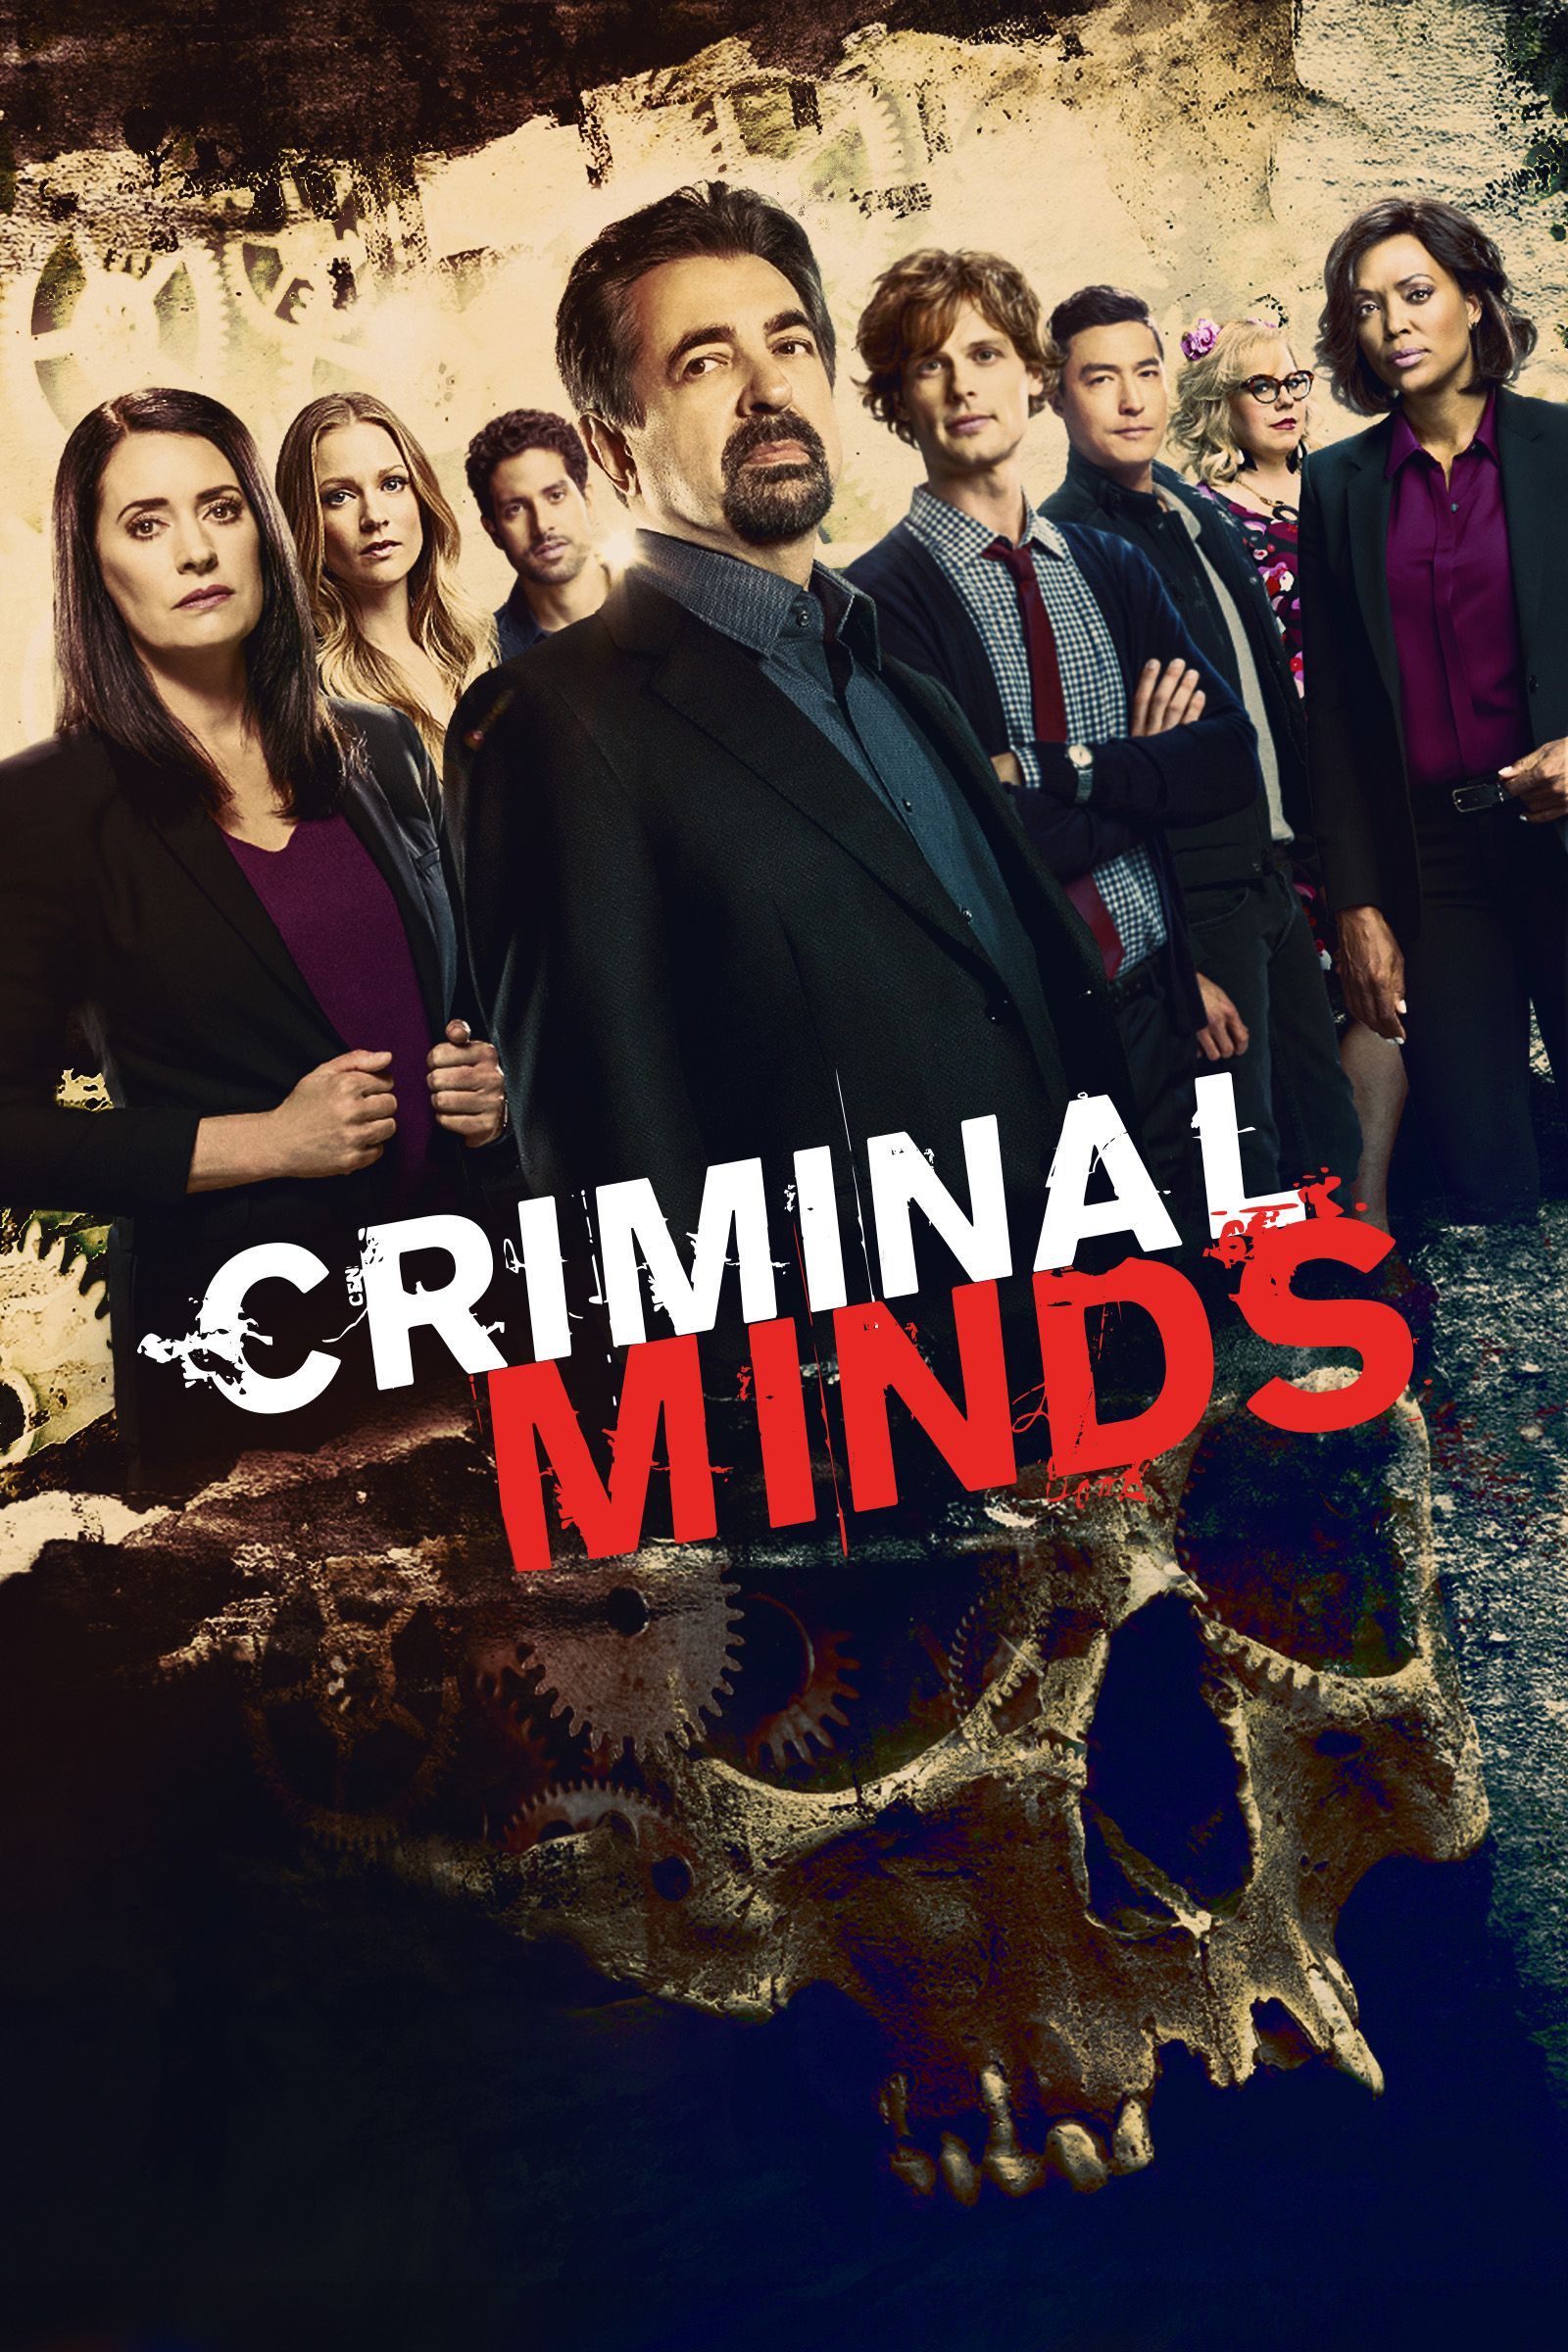 'Criminal mind'